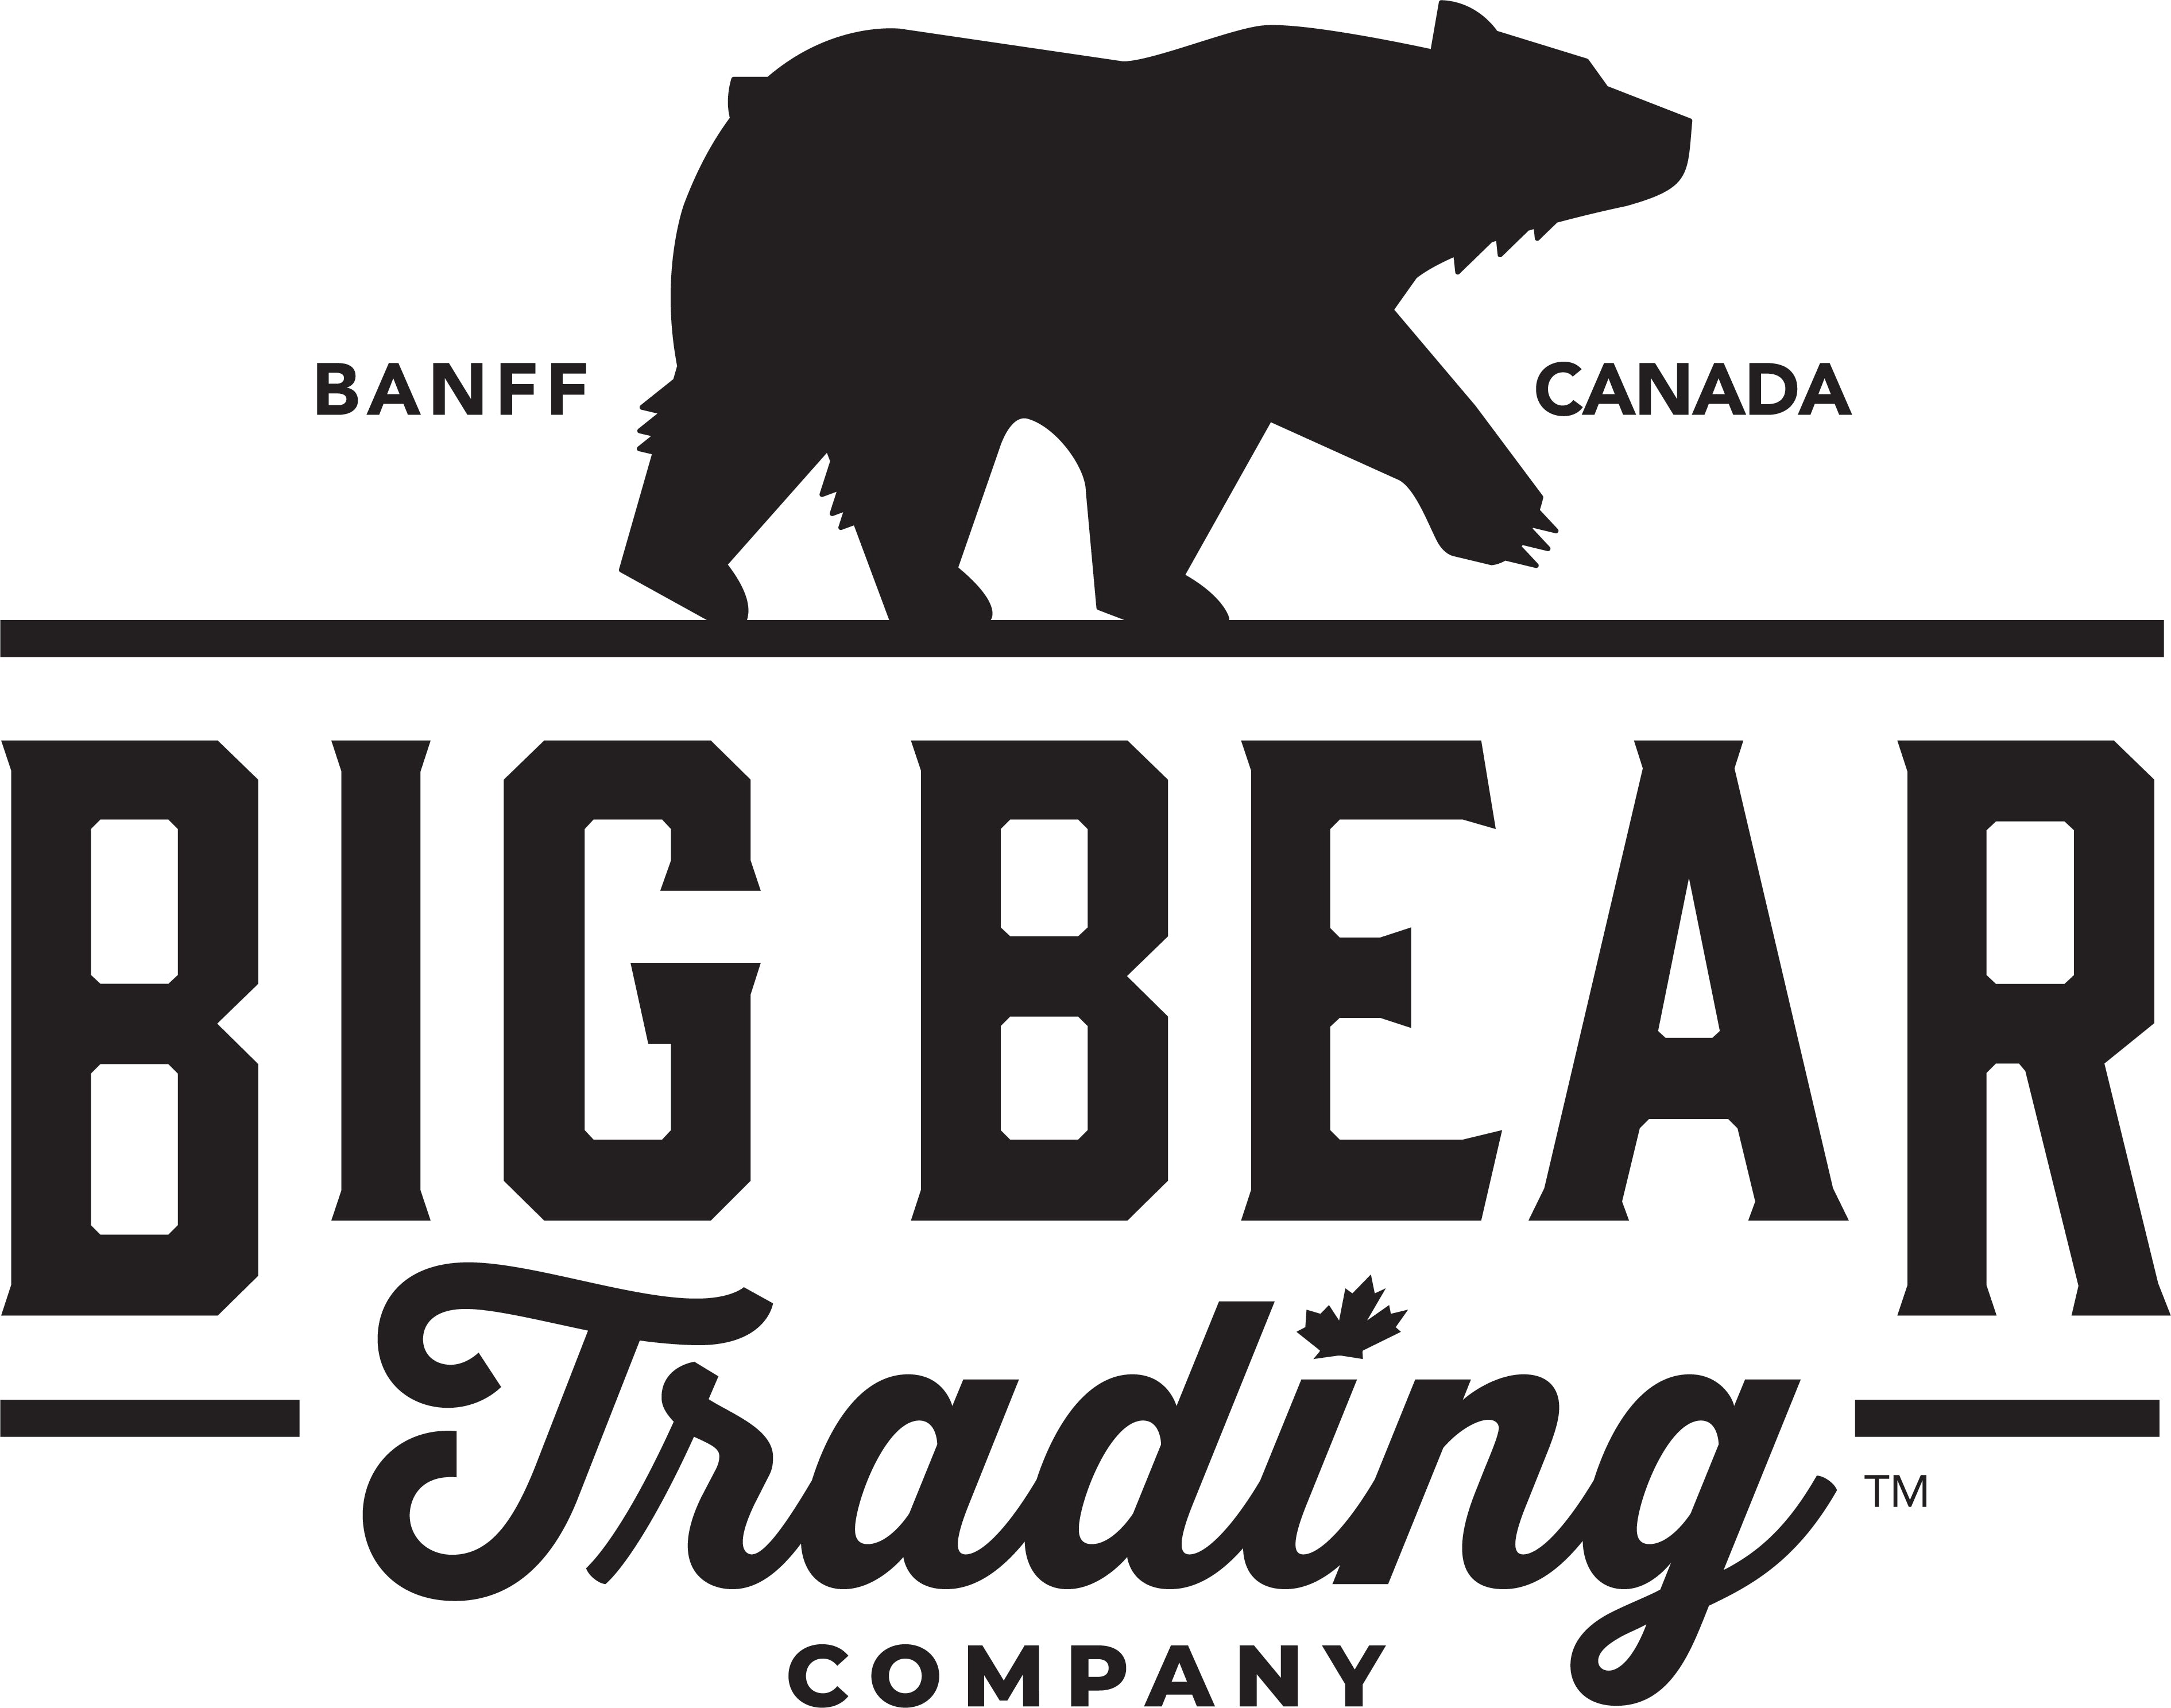 Big Bear Trading Company